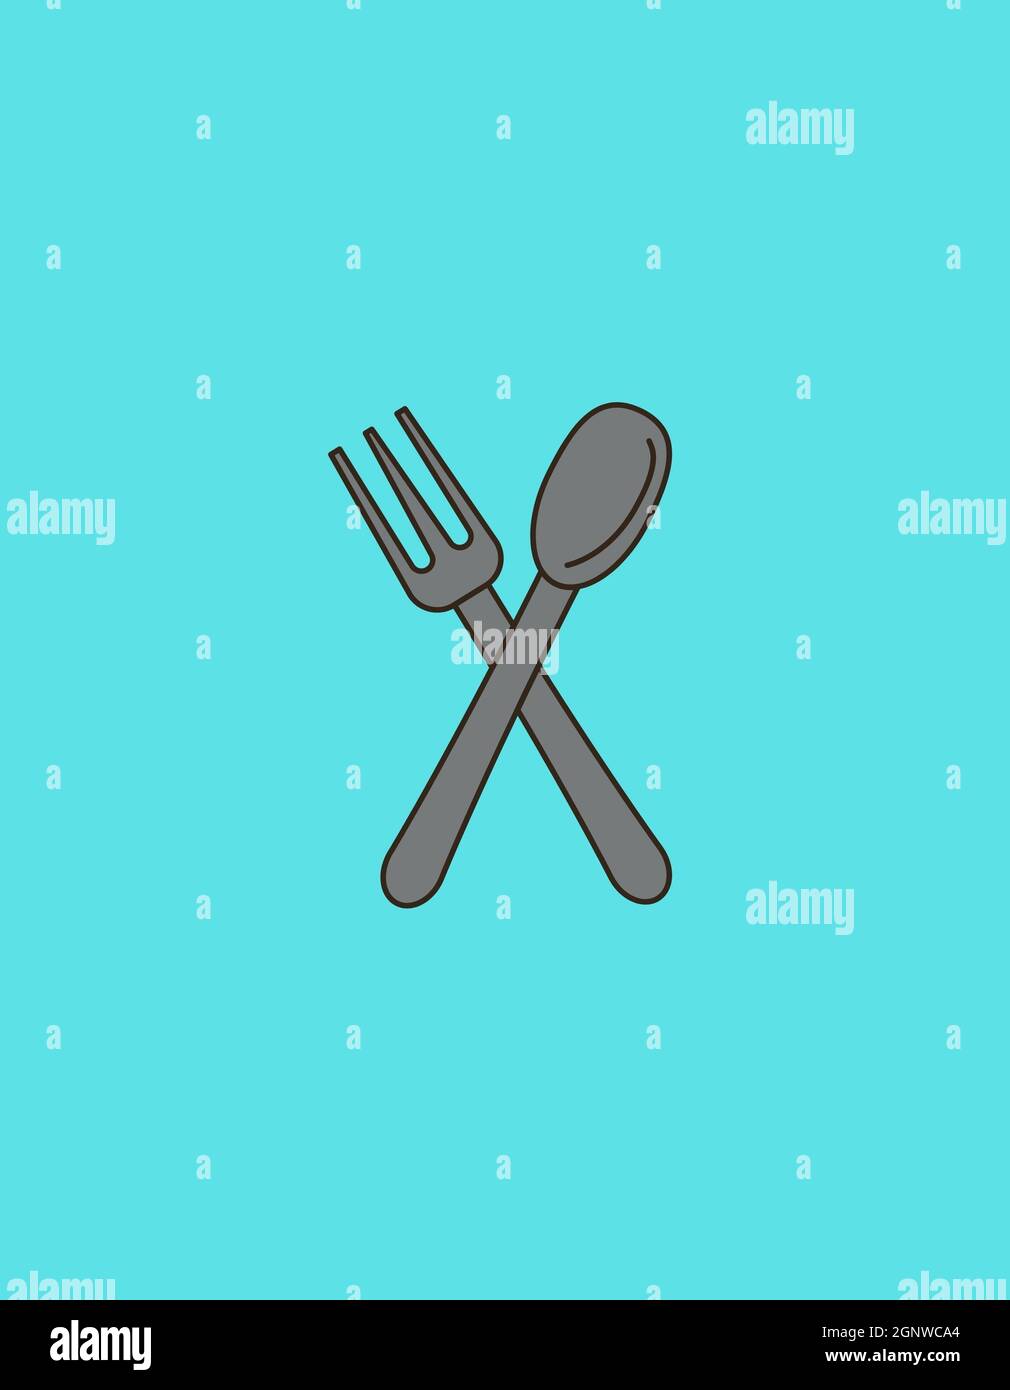 Illustration de crème glacée, sandwichs, fourchette, cuillère, logo de nourriture écologique sur fond bleu commercial Banque D'Images